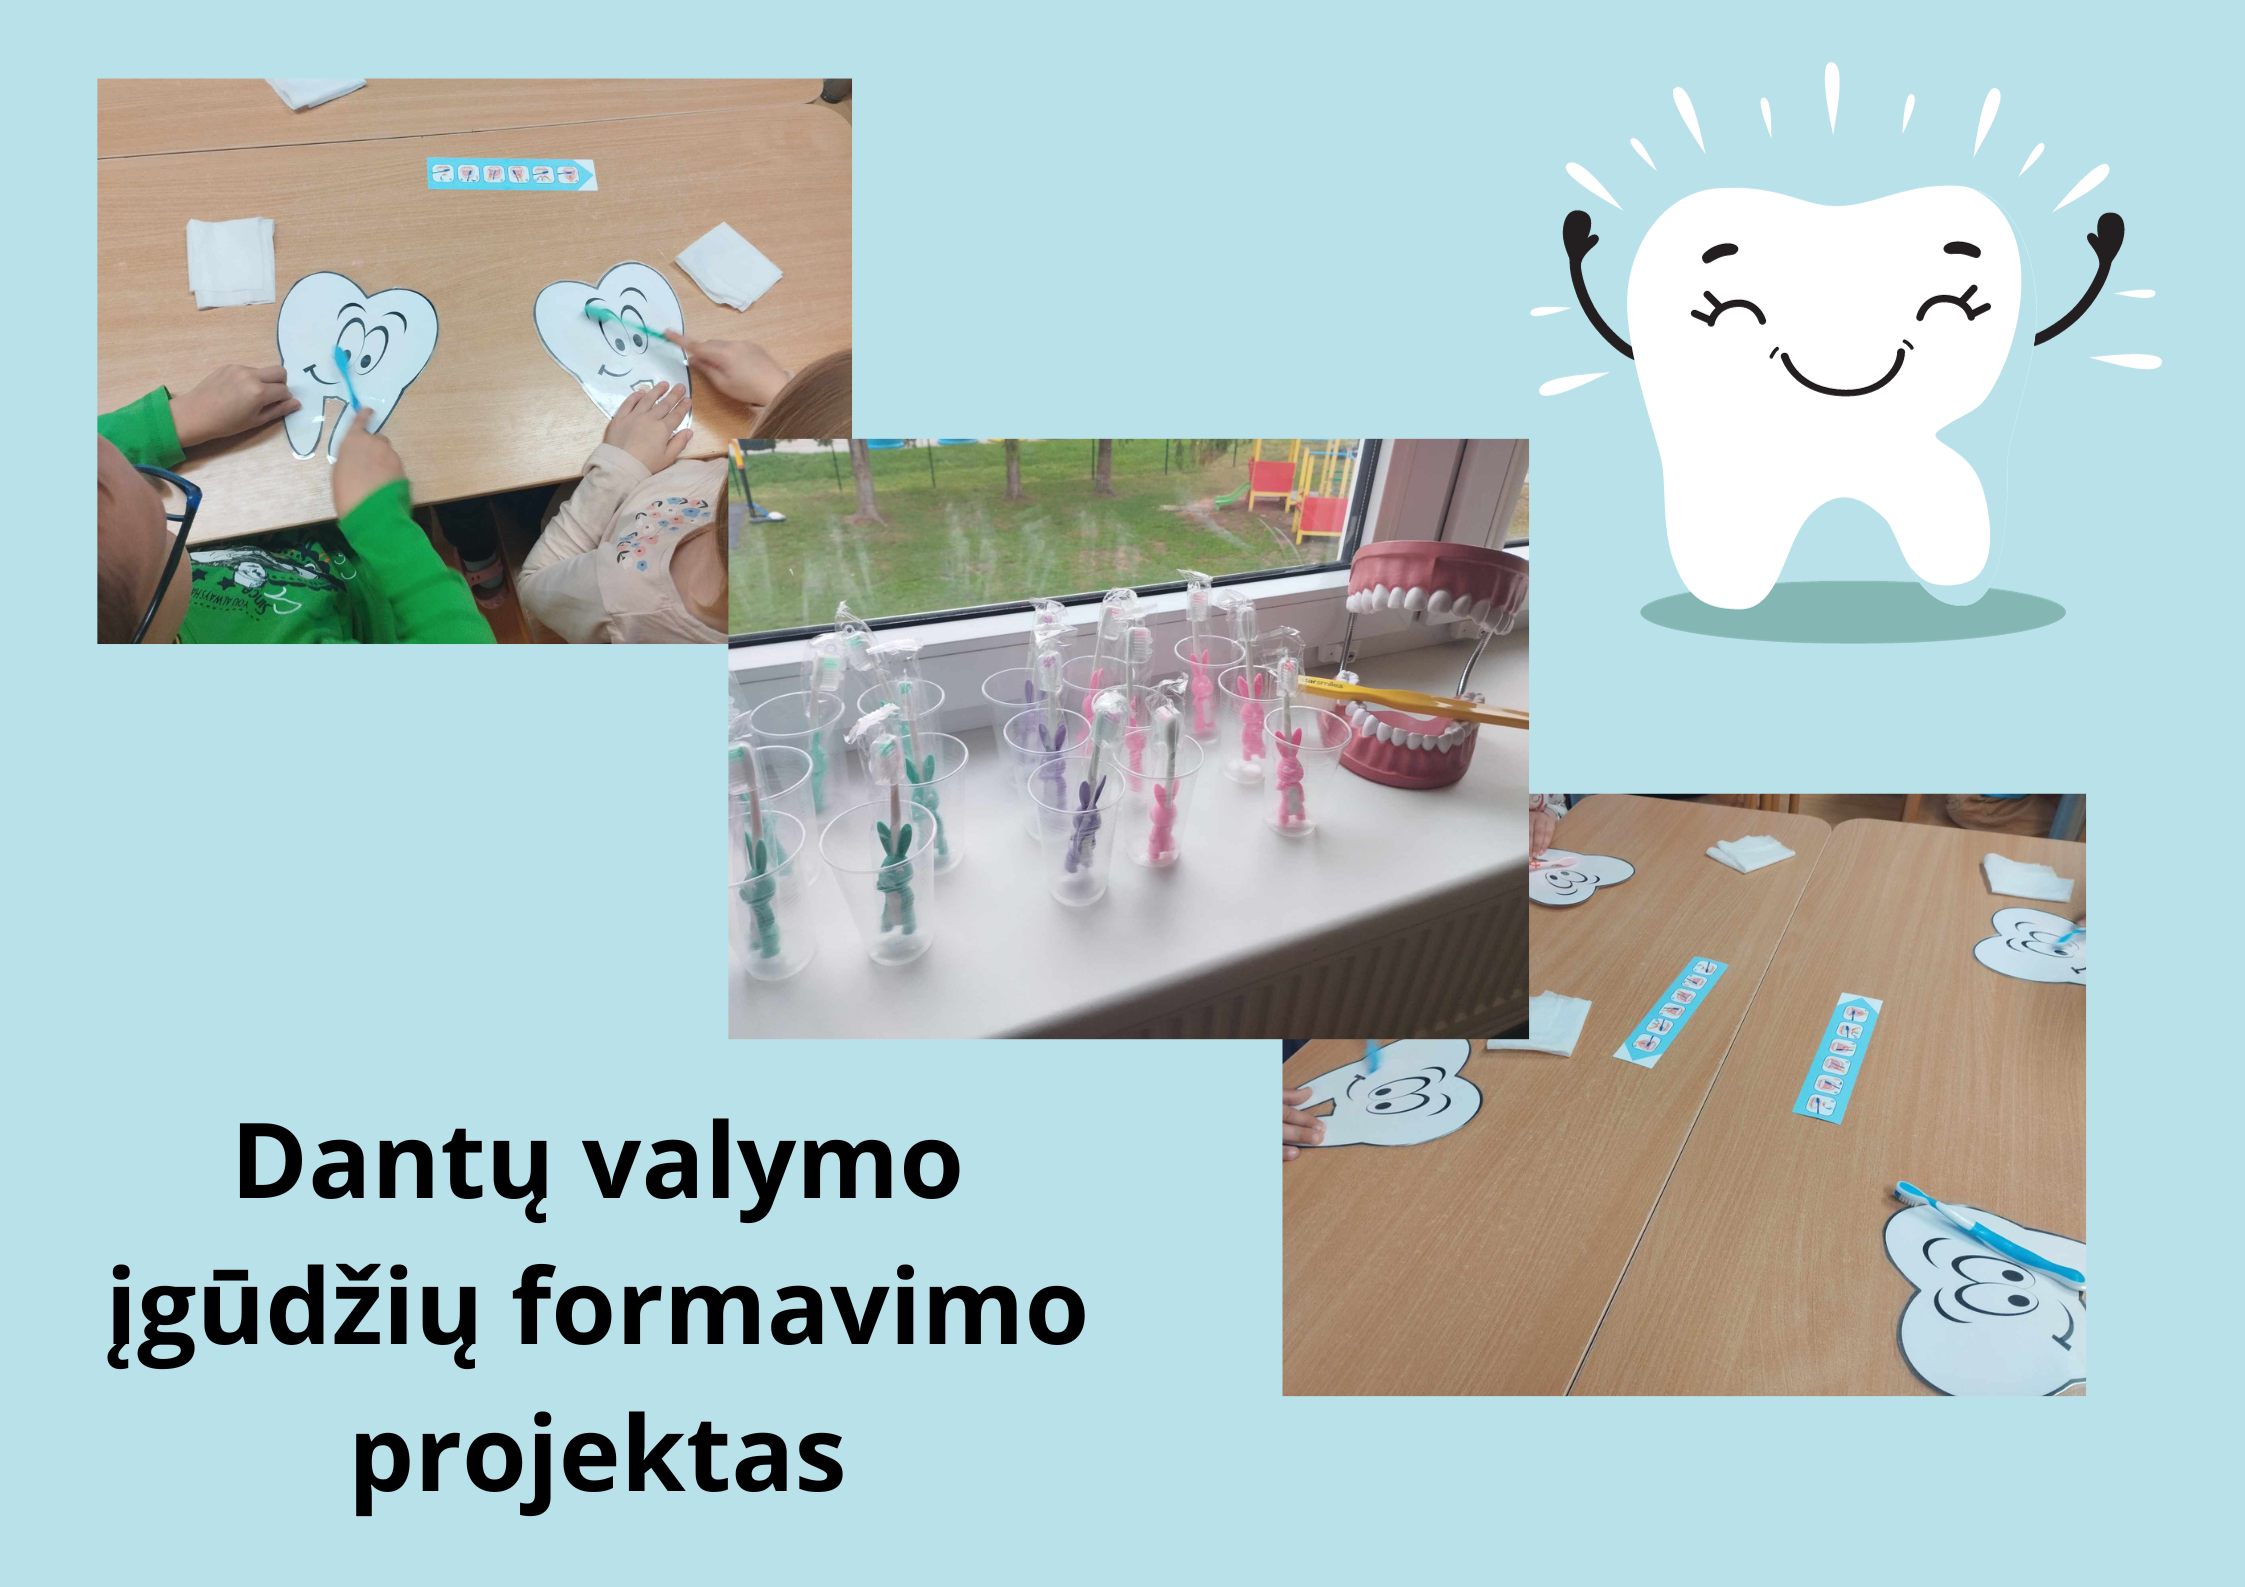 „dantu-valymo-igudziu-formavimo-projektas“-siauliu-r.-voveriskiu-ir-kuziu-mokyklu-priesmokyklinese-grupese